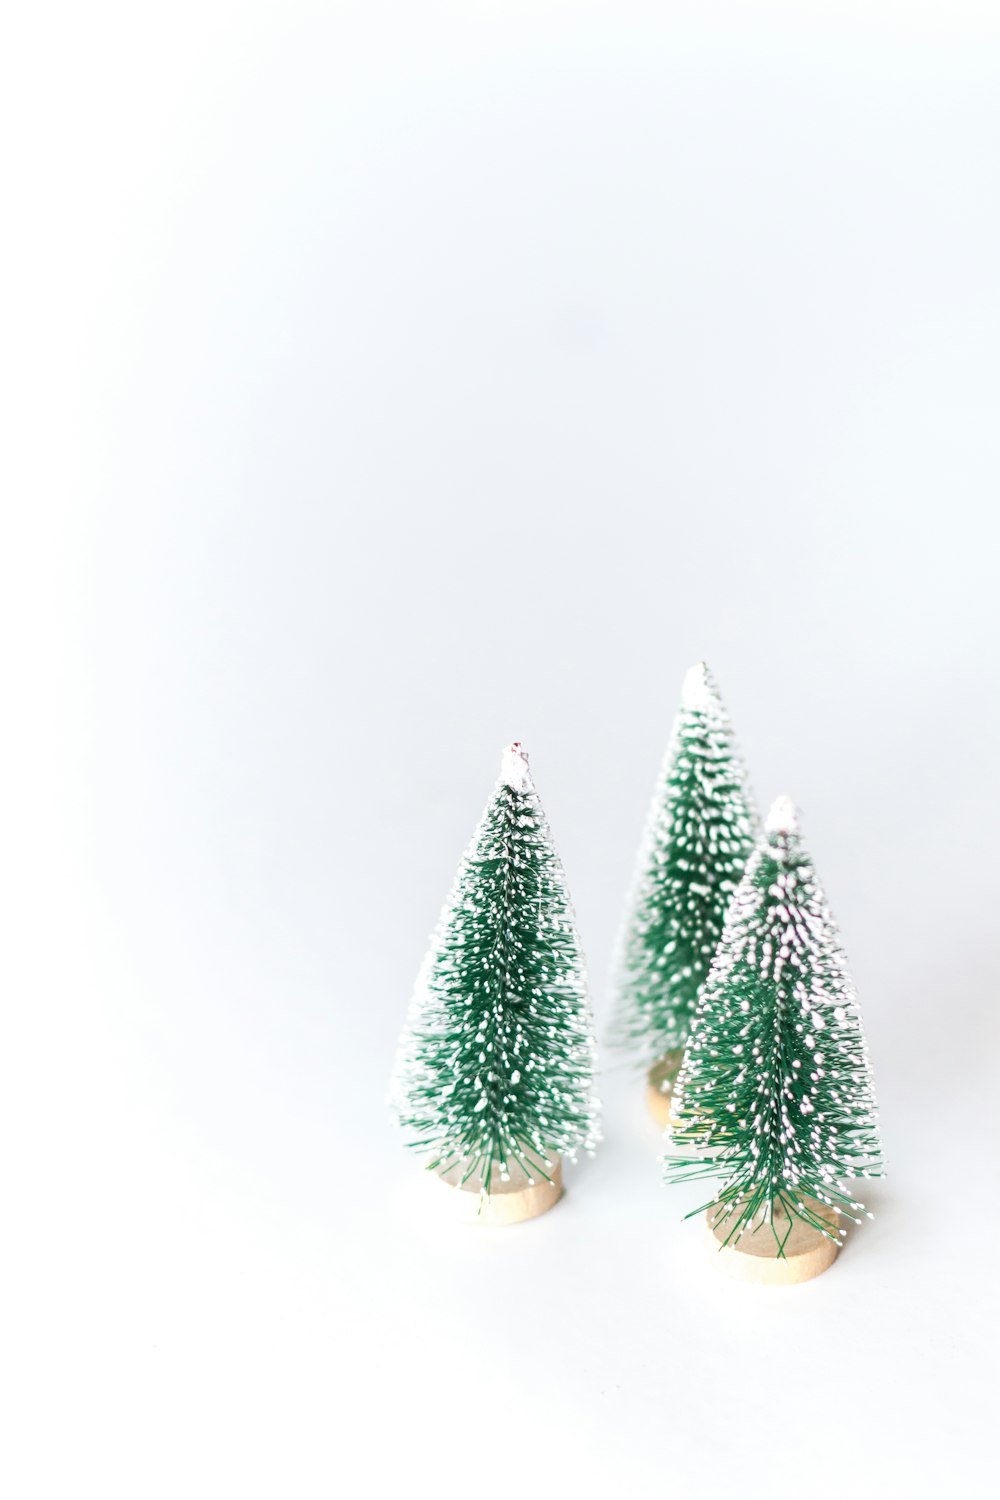 três pequenas árvores de Natal verdes